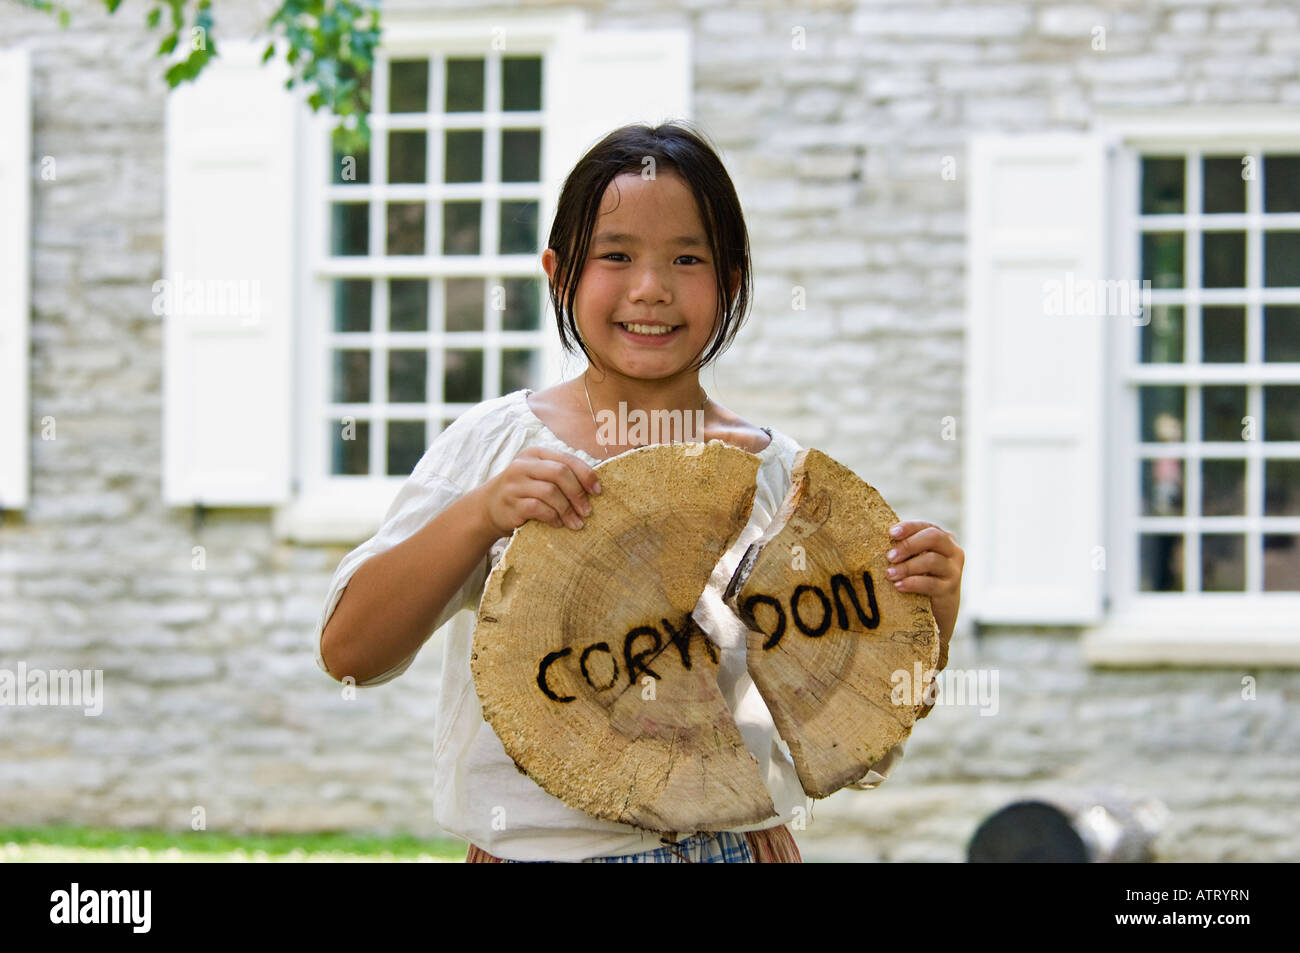 Junge asiatische Mädchen Holding Stück der gesägt Log mit the Stadt Name von Corydon gebrandmarkt drin während Indiana-Territorium-Festival Stockfoto